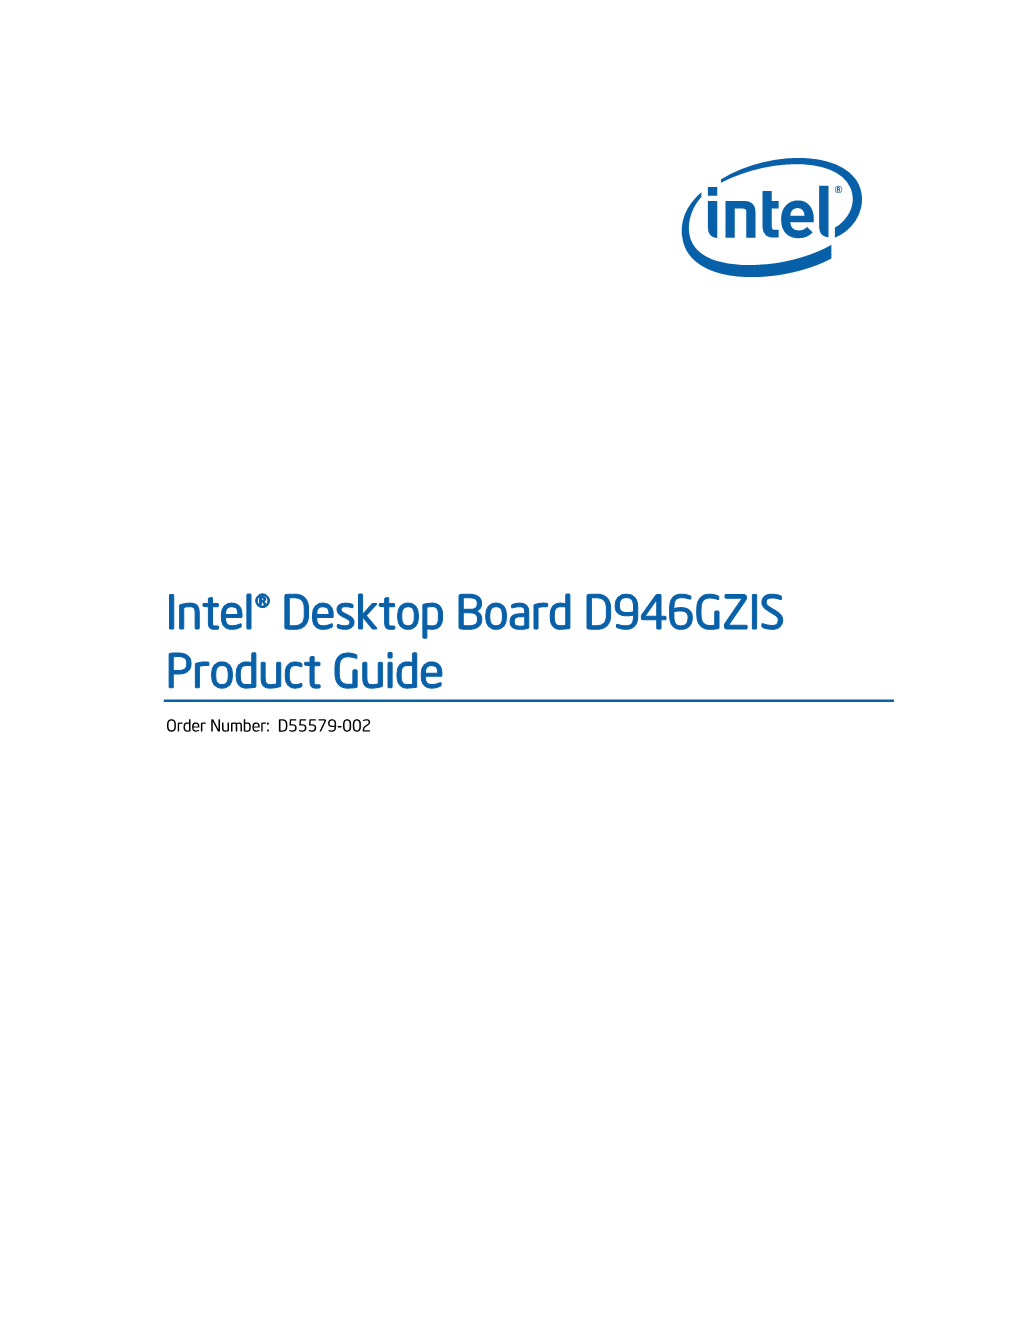 Intel® Desktop Board D946GZIS Product Guide